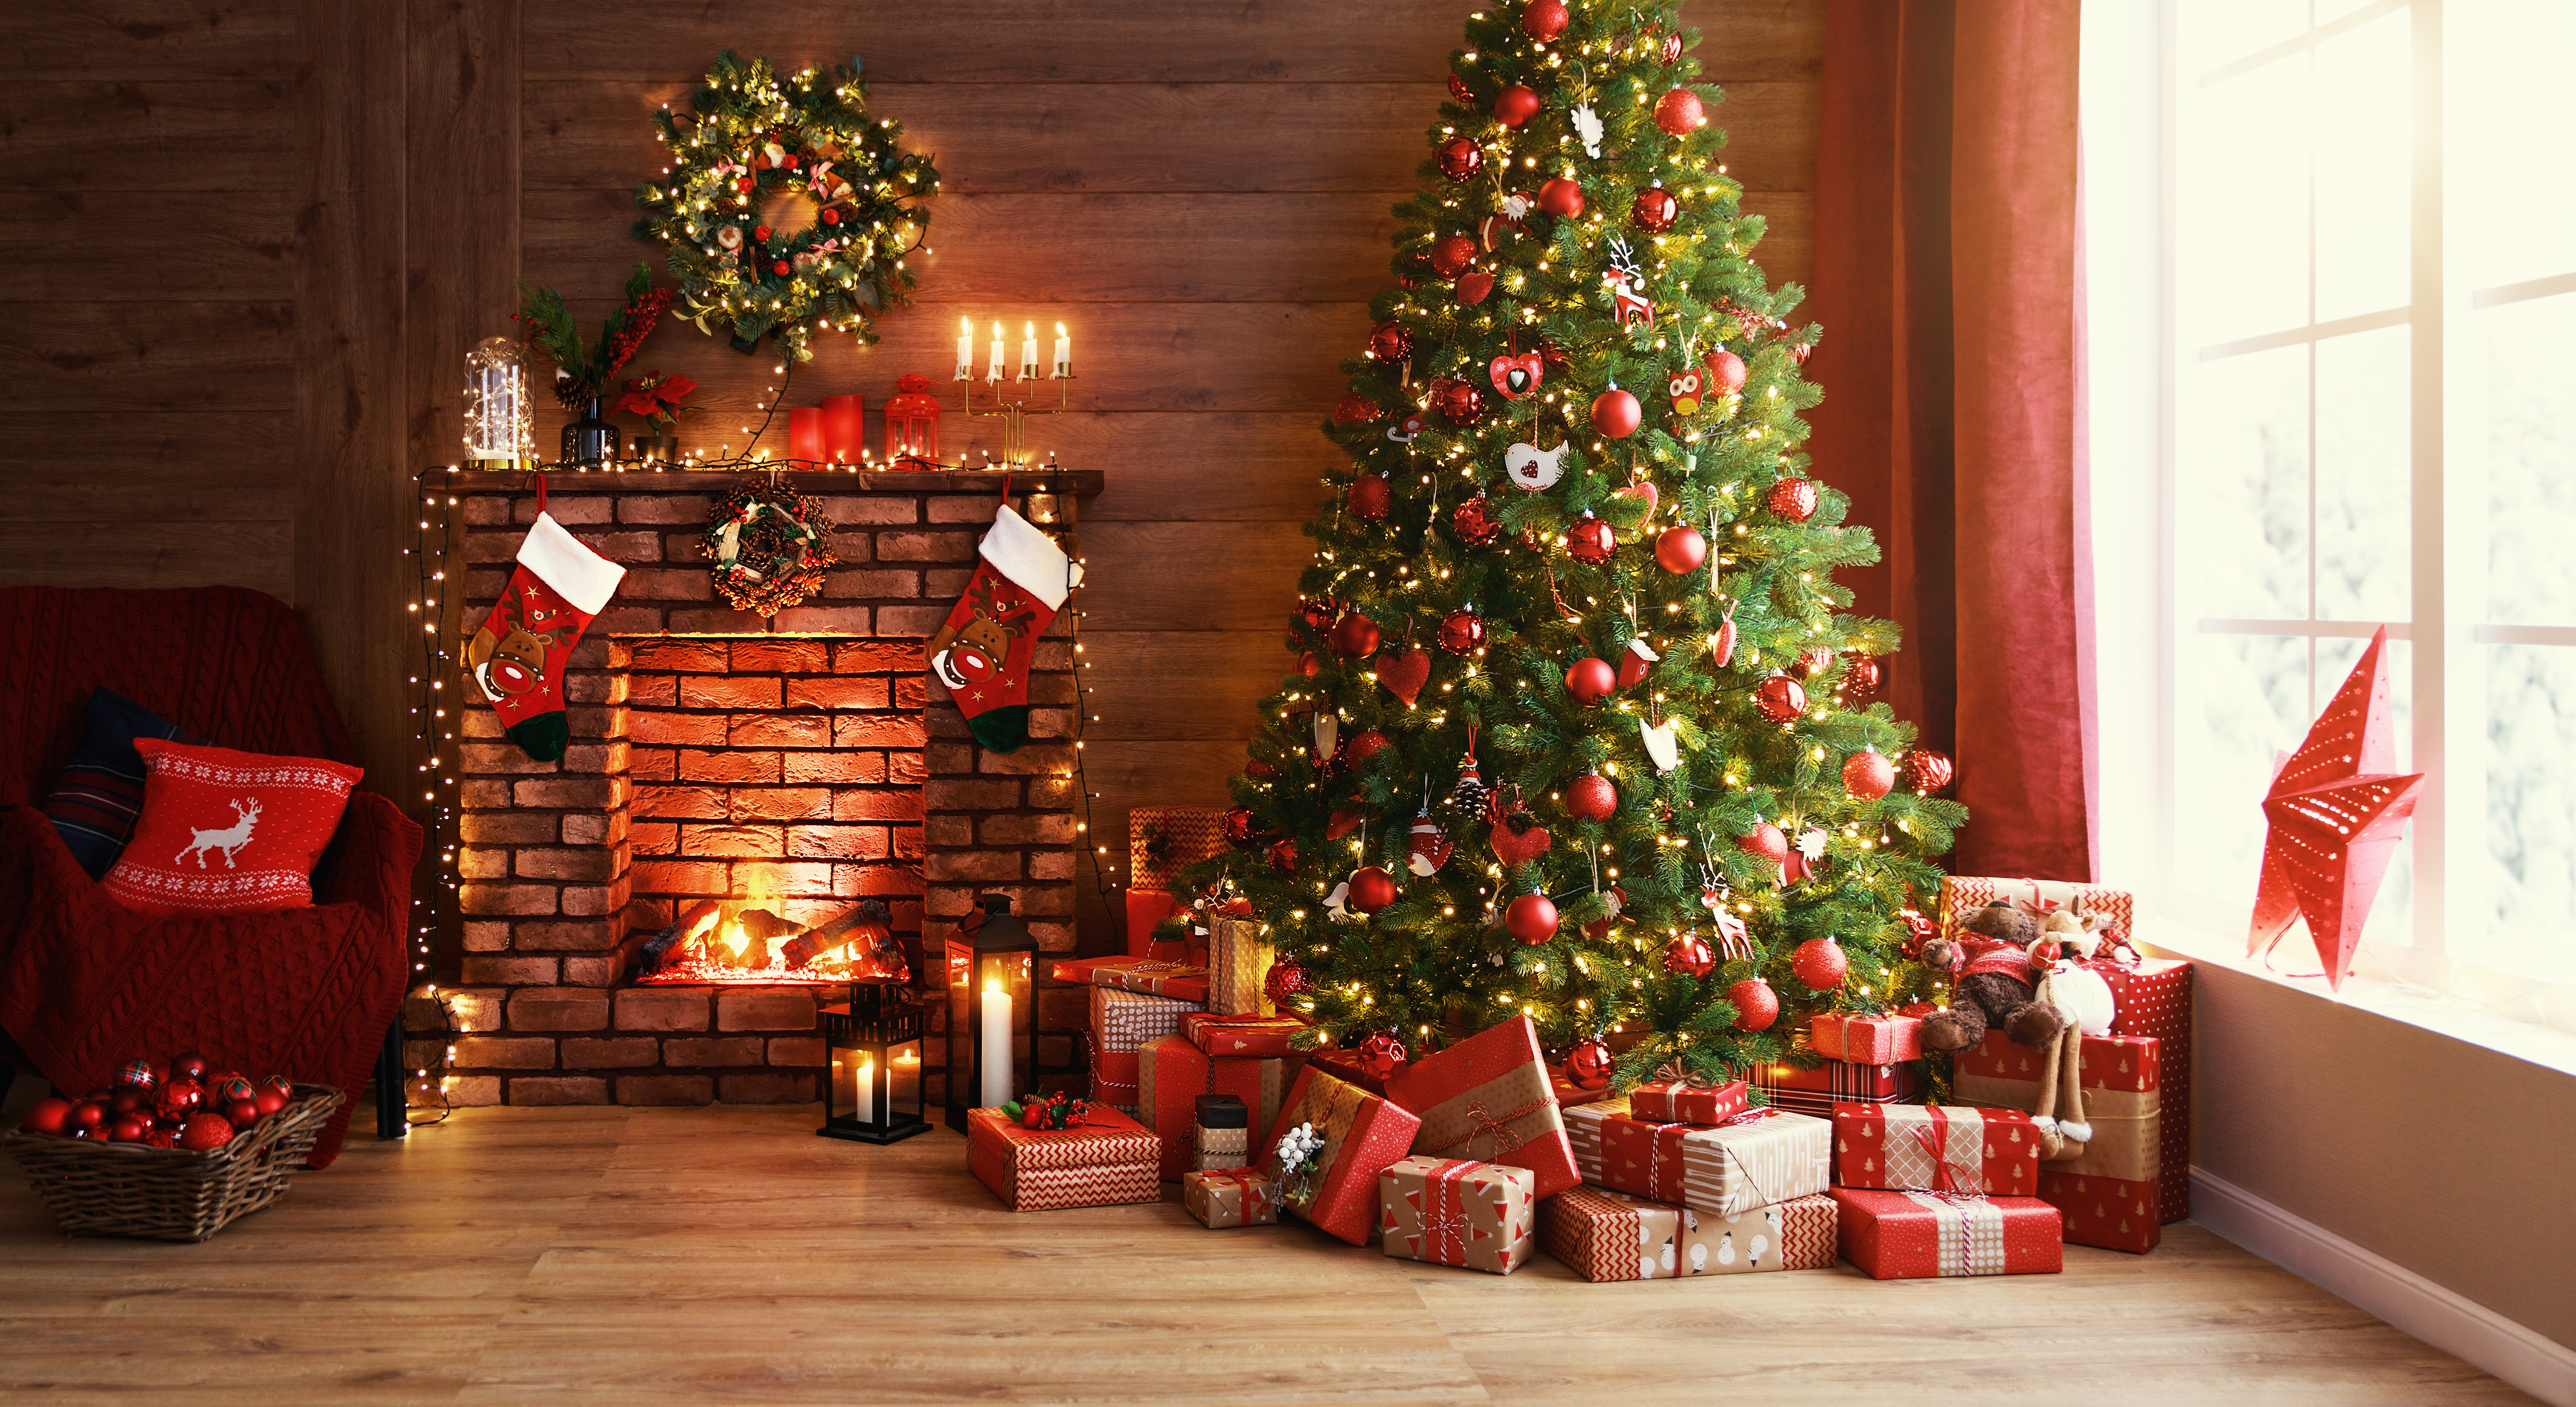 Boîtes de cadeaux sous un sapin de Noël | Source : Shutterstock